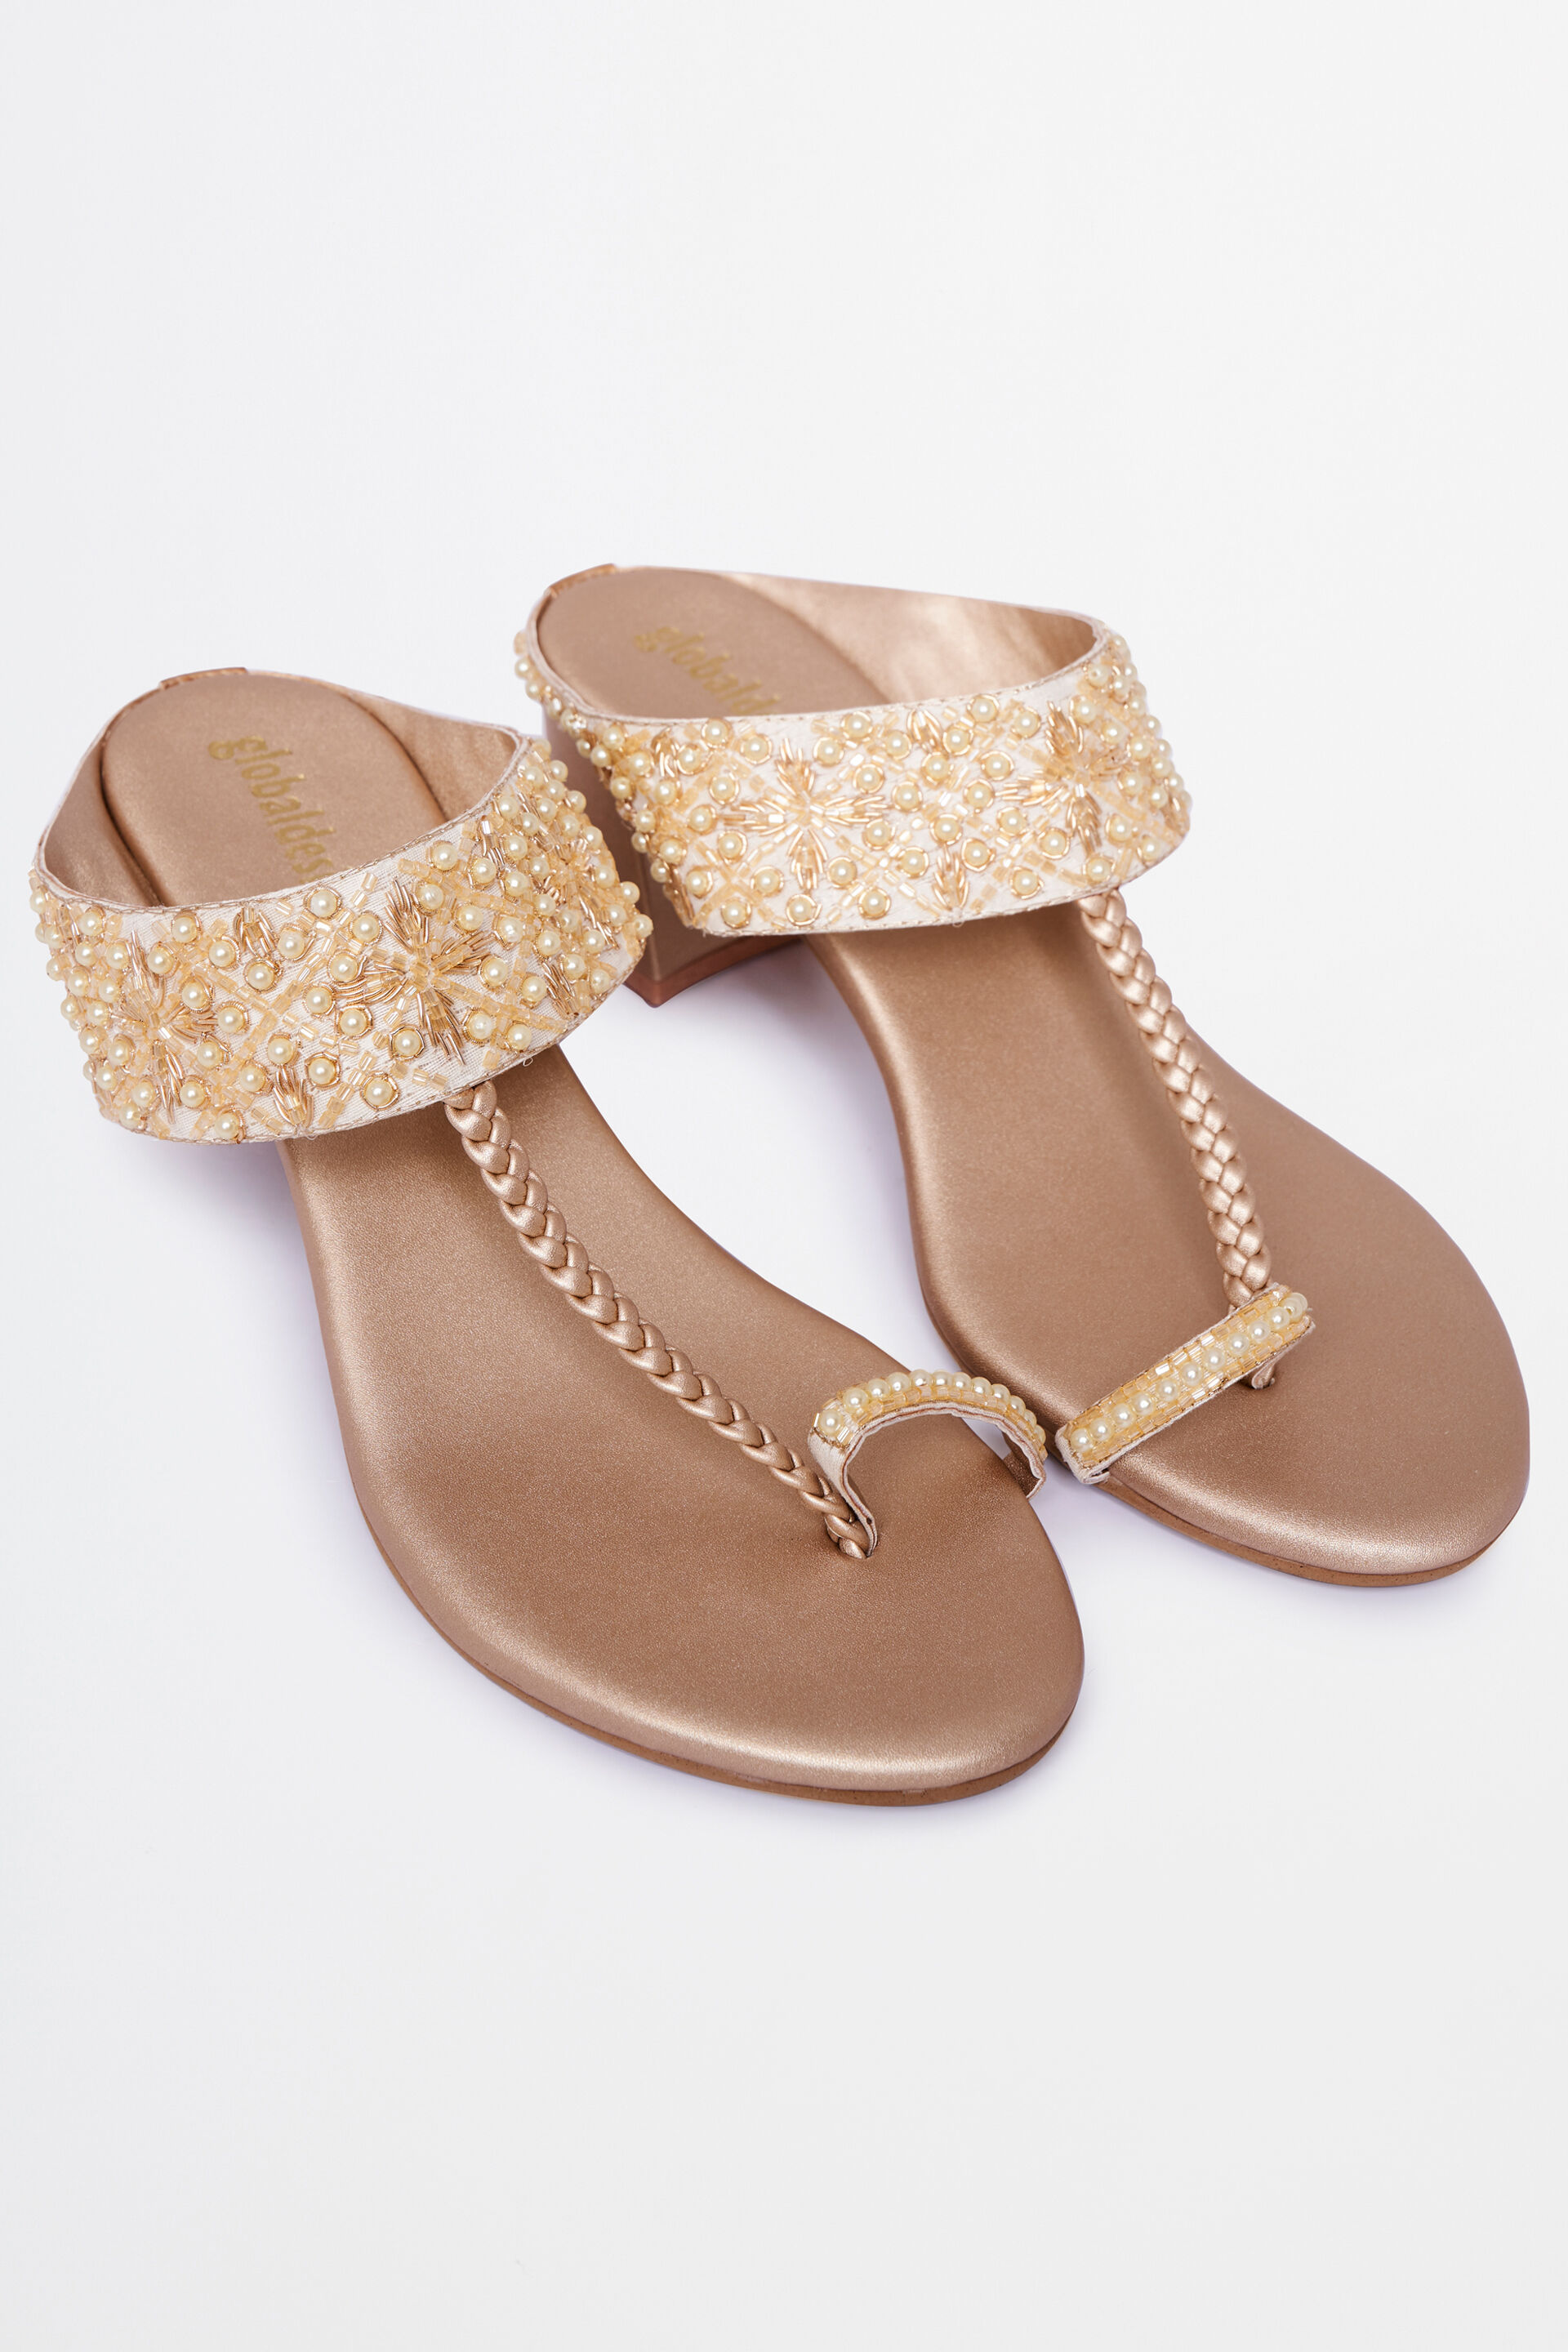 Sandals - Buy Sandals Online for Men, Women & Kids | Myntra